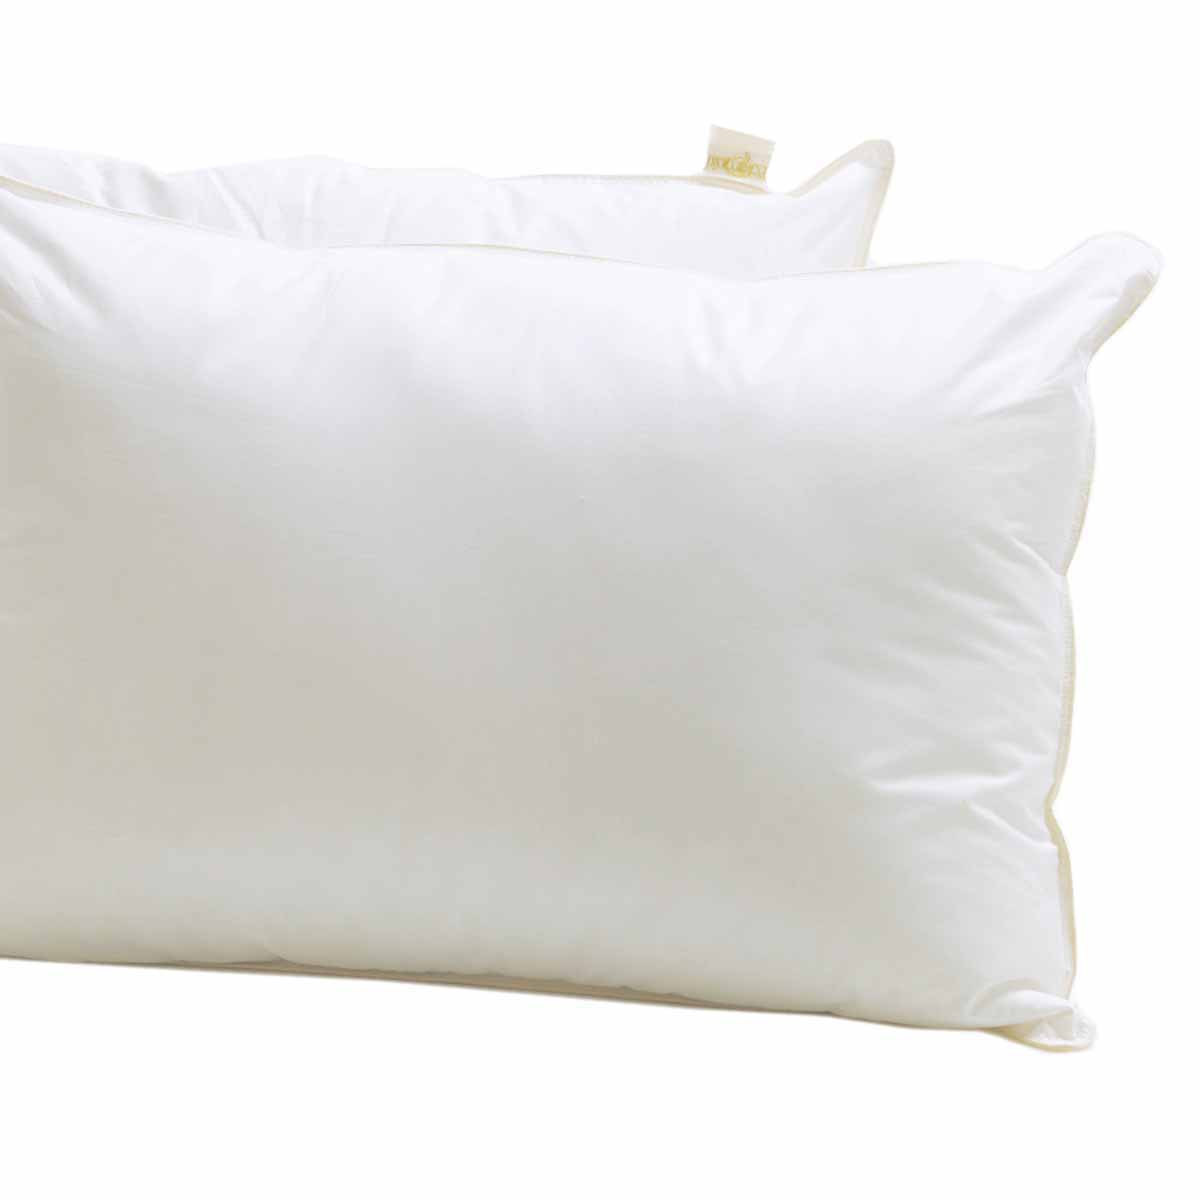 Βρεφικό Μαξιλάρι Μαλακό (35×45) Palamaiki White Comfort Baby Pillow Polyester 60158